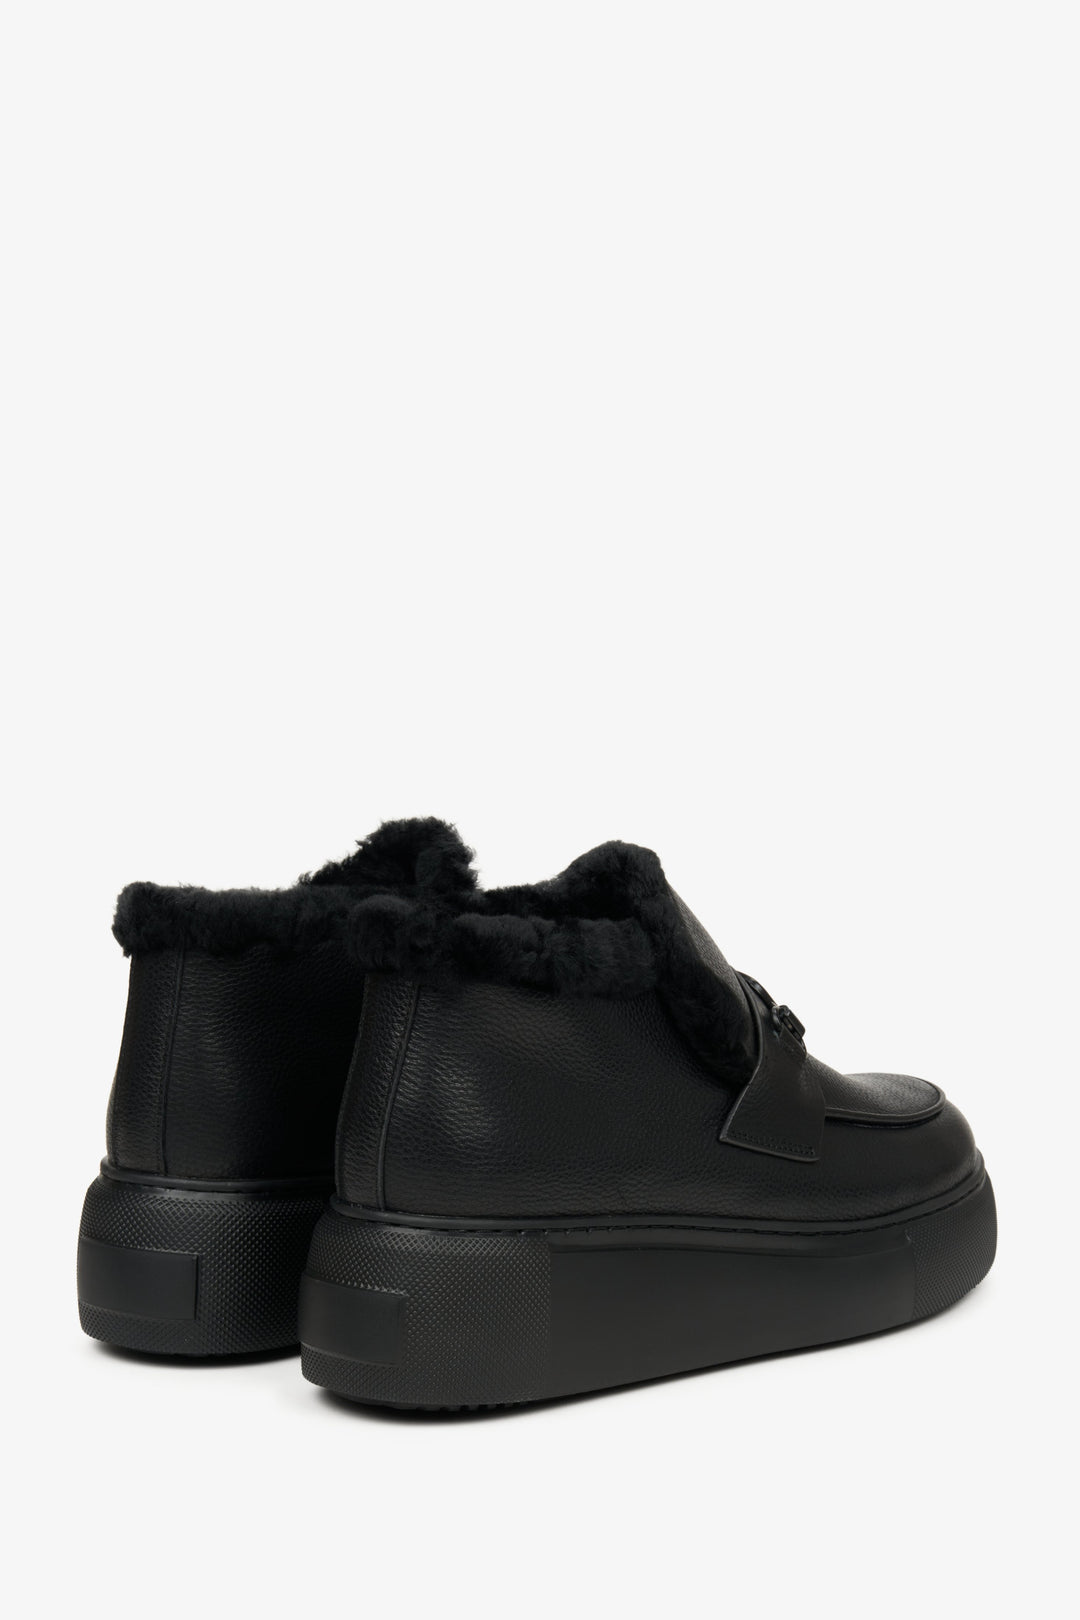 Zimowe botki damskie w kolorze czarnym  z futrzanym wypełnieniem - zbliżenie na tył butów marki Estro.